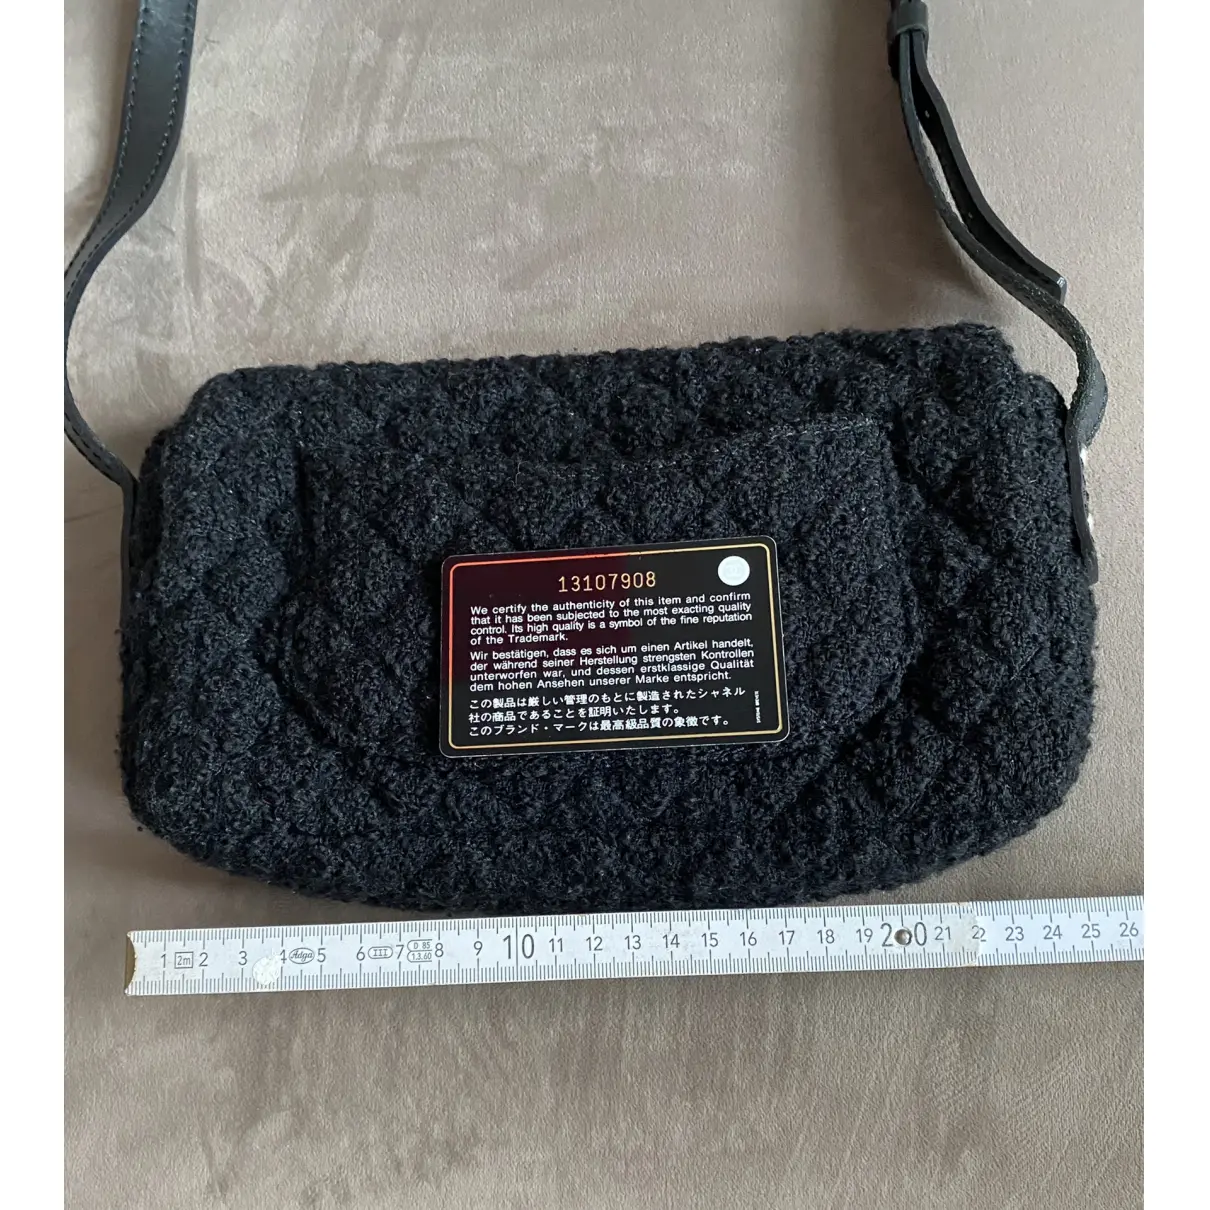 2.55 tweed bag Chanel - Vintage